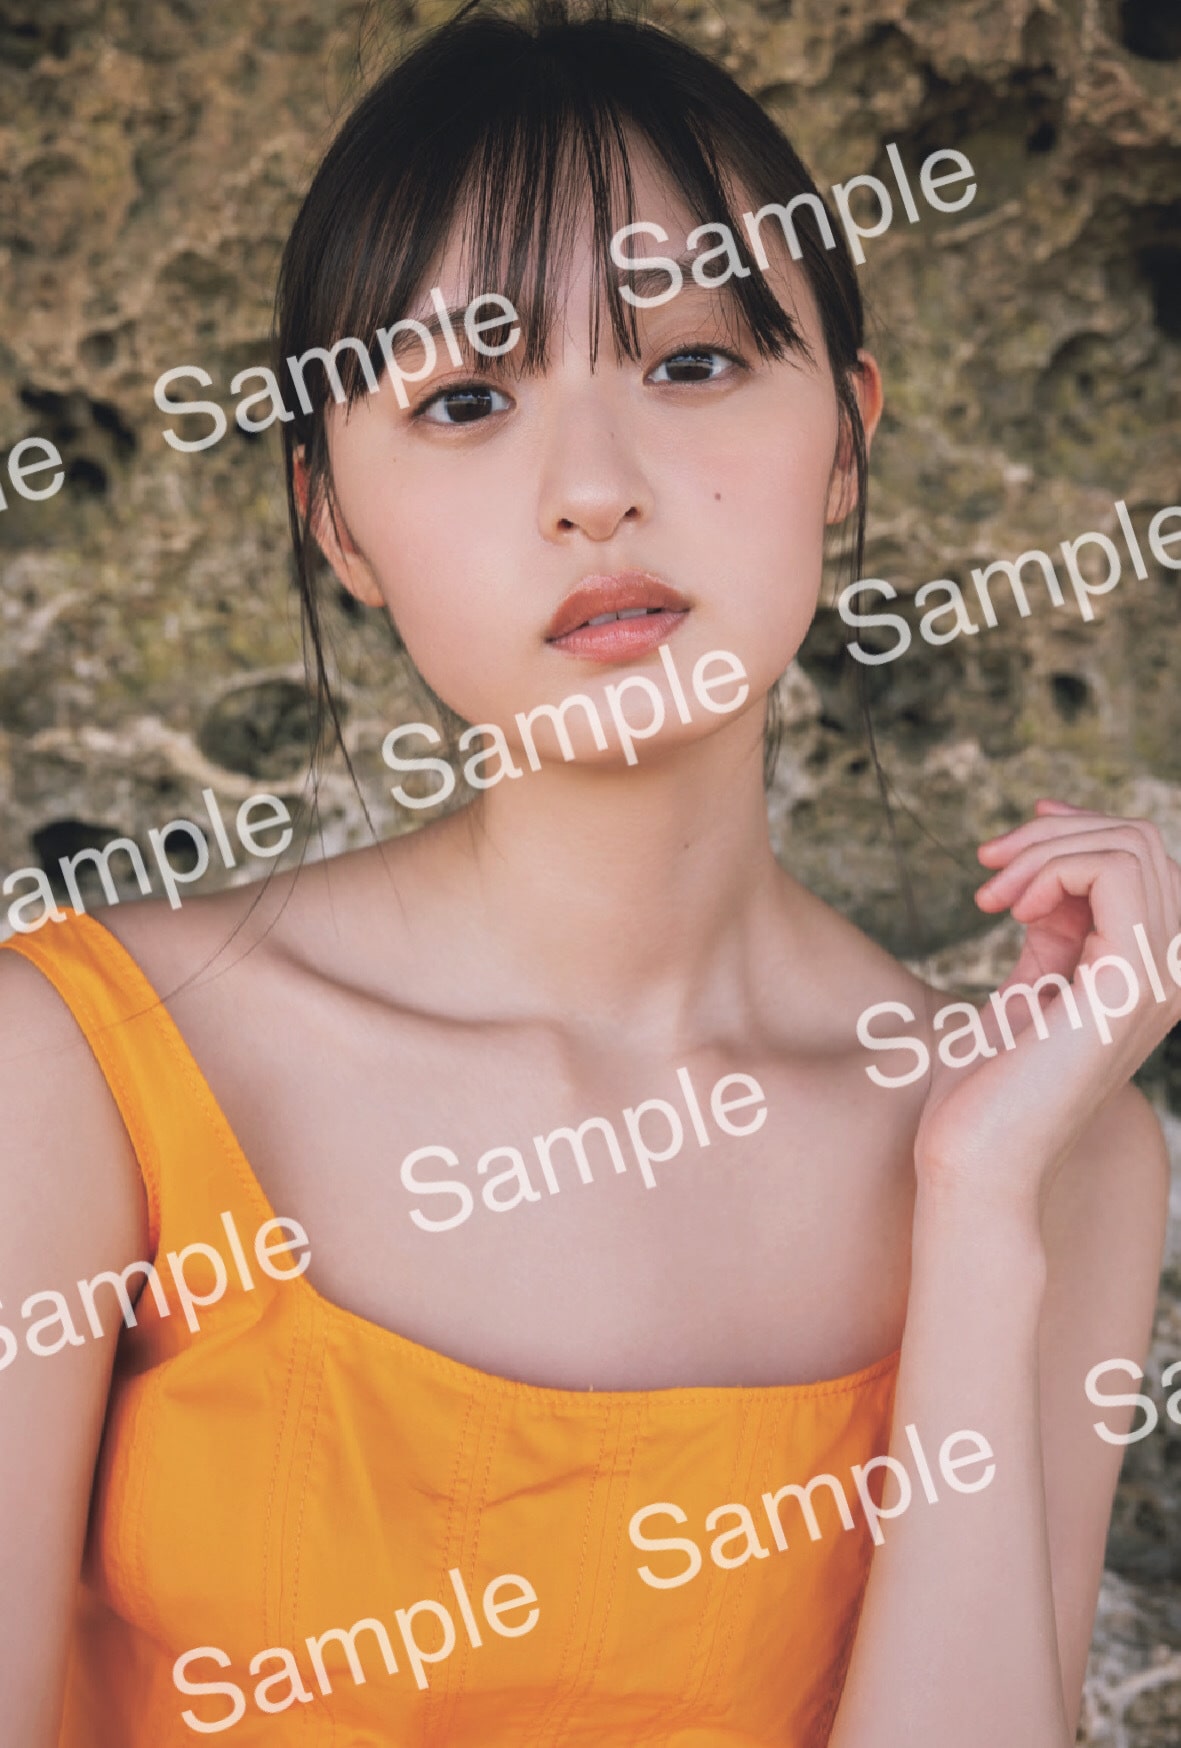 乃木坂46 遠藤さくら1st写真集『可憐』、封入ポストカード第二弾の表情 